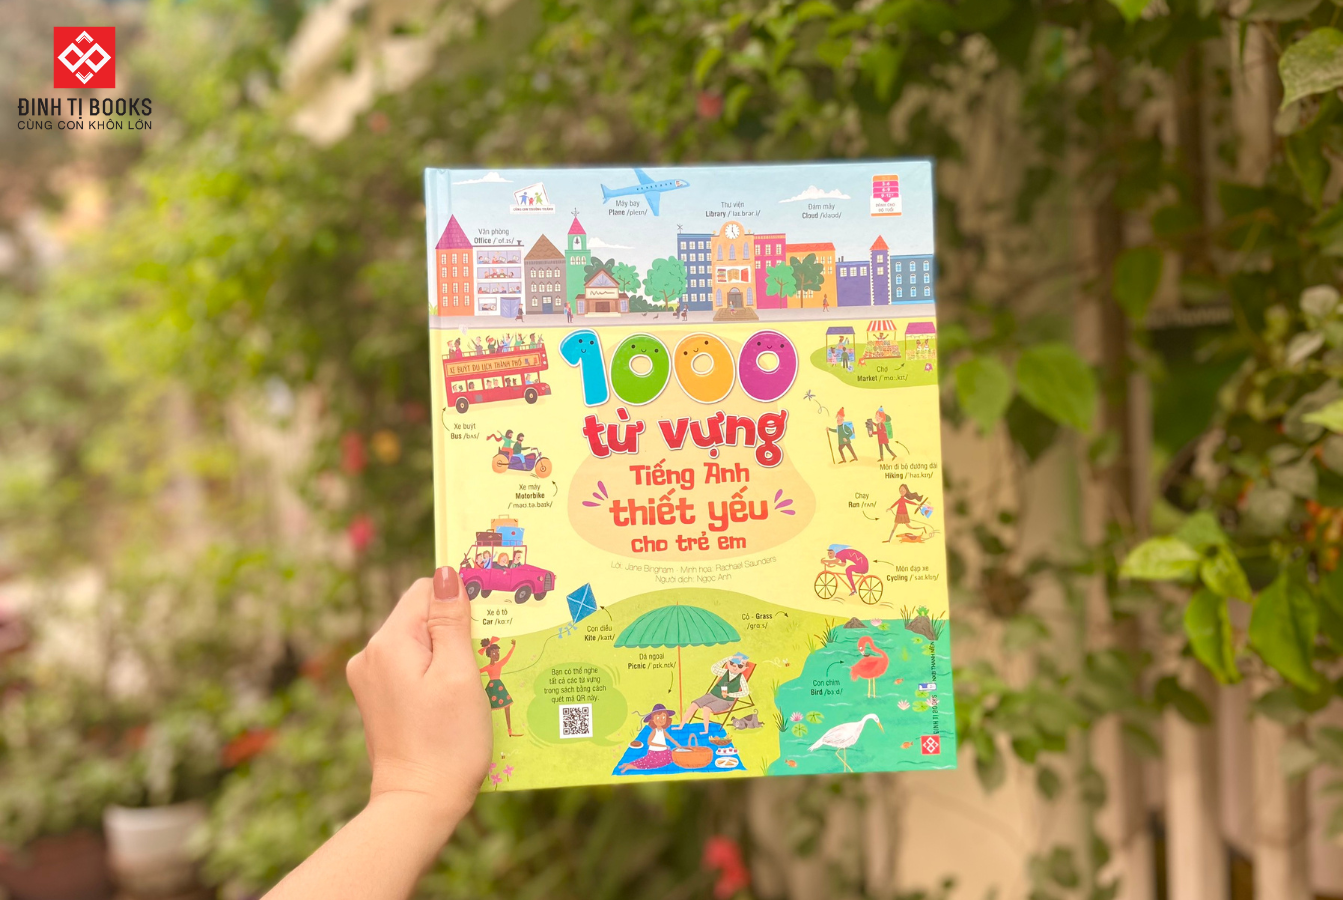 1000 từ vựng tiếng Anh thiết yếu cho trẻ em với kho từ vựng phong phú, đa dạng chủ đề - Đinh Tị Books